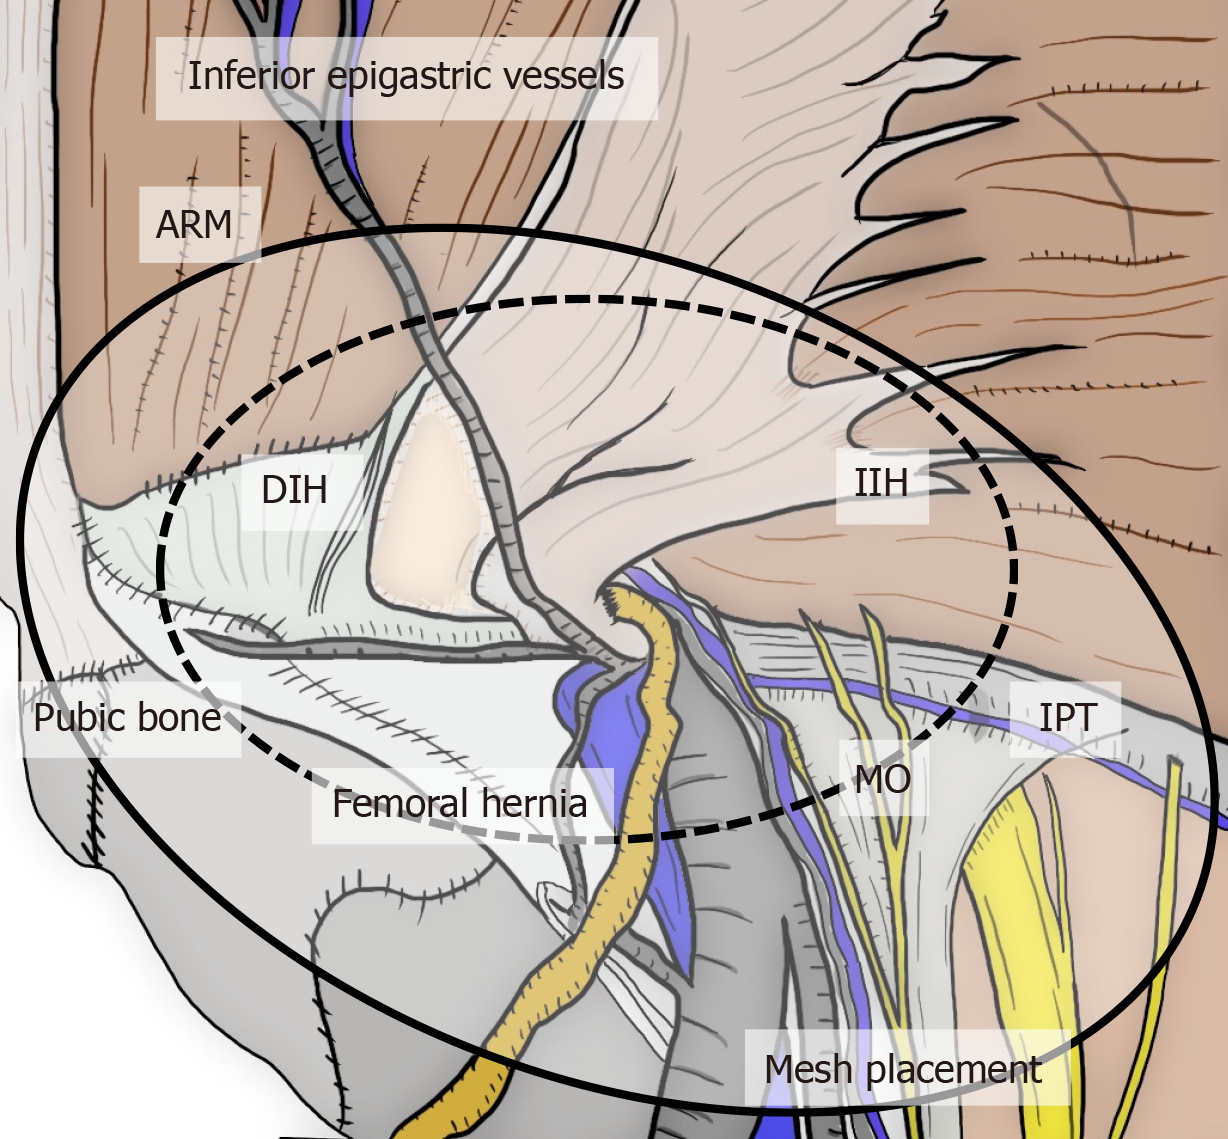 Perioperative management - Femoral hernia repair – TIPP technique